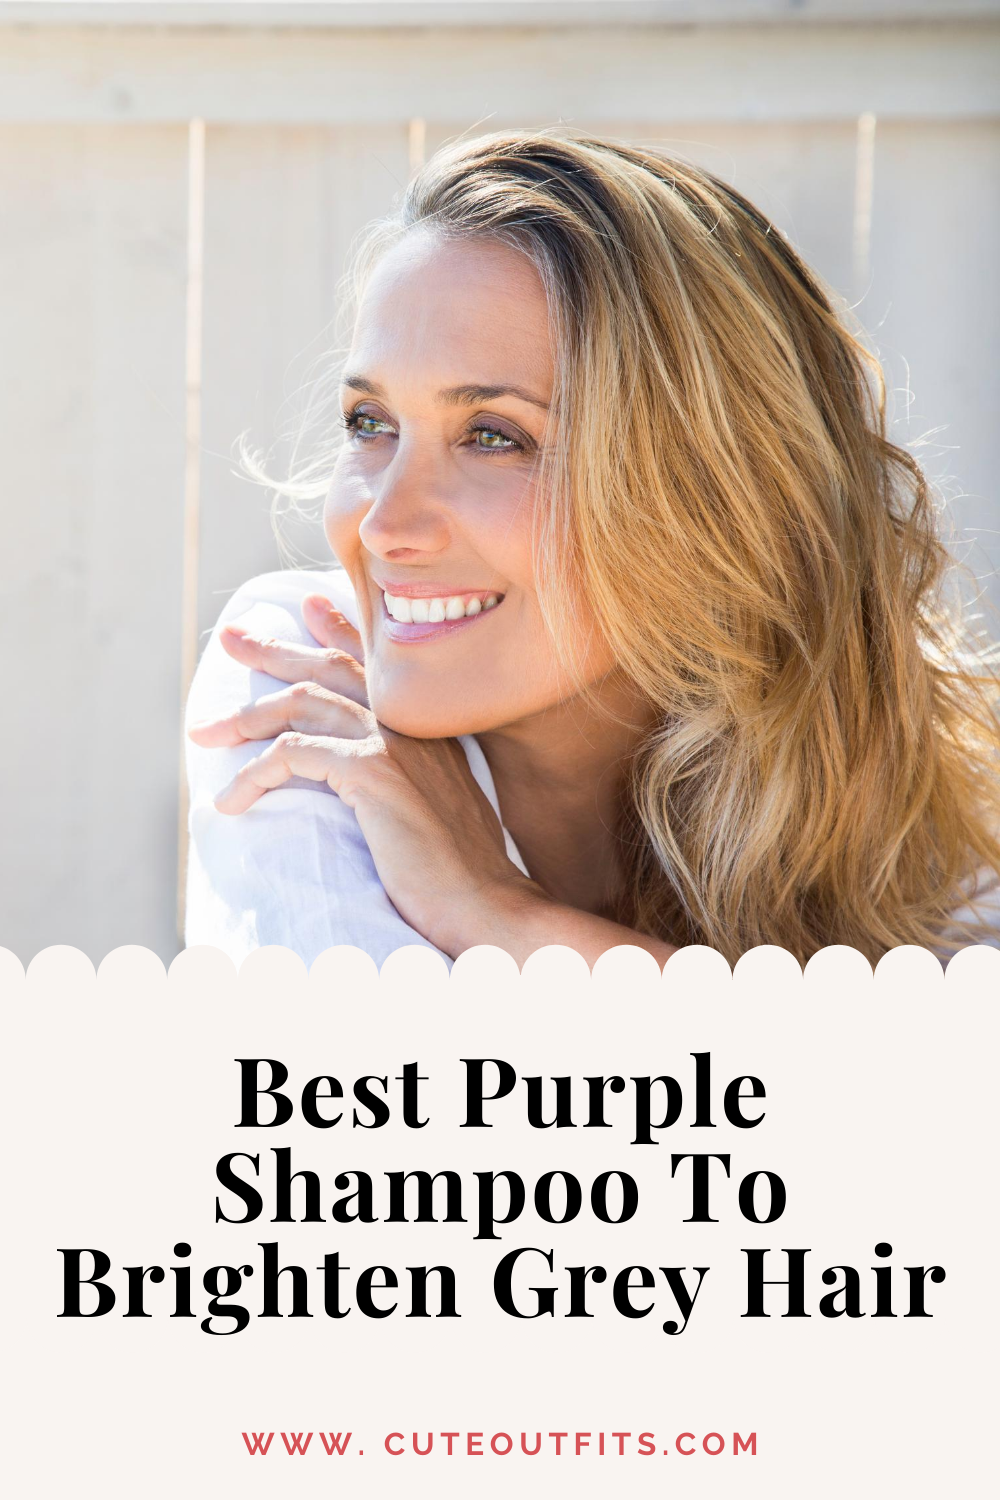 placard | Best Purple Shampoo To Brighten Grey Hair